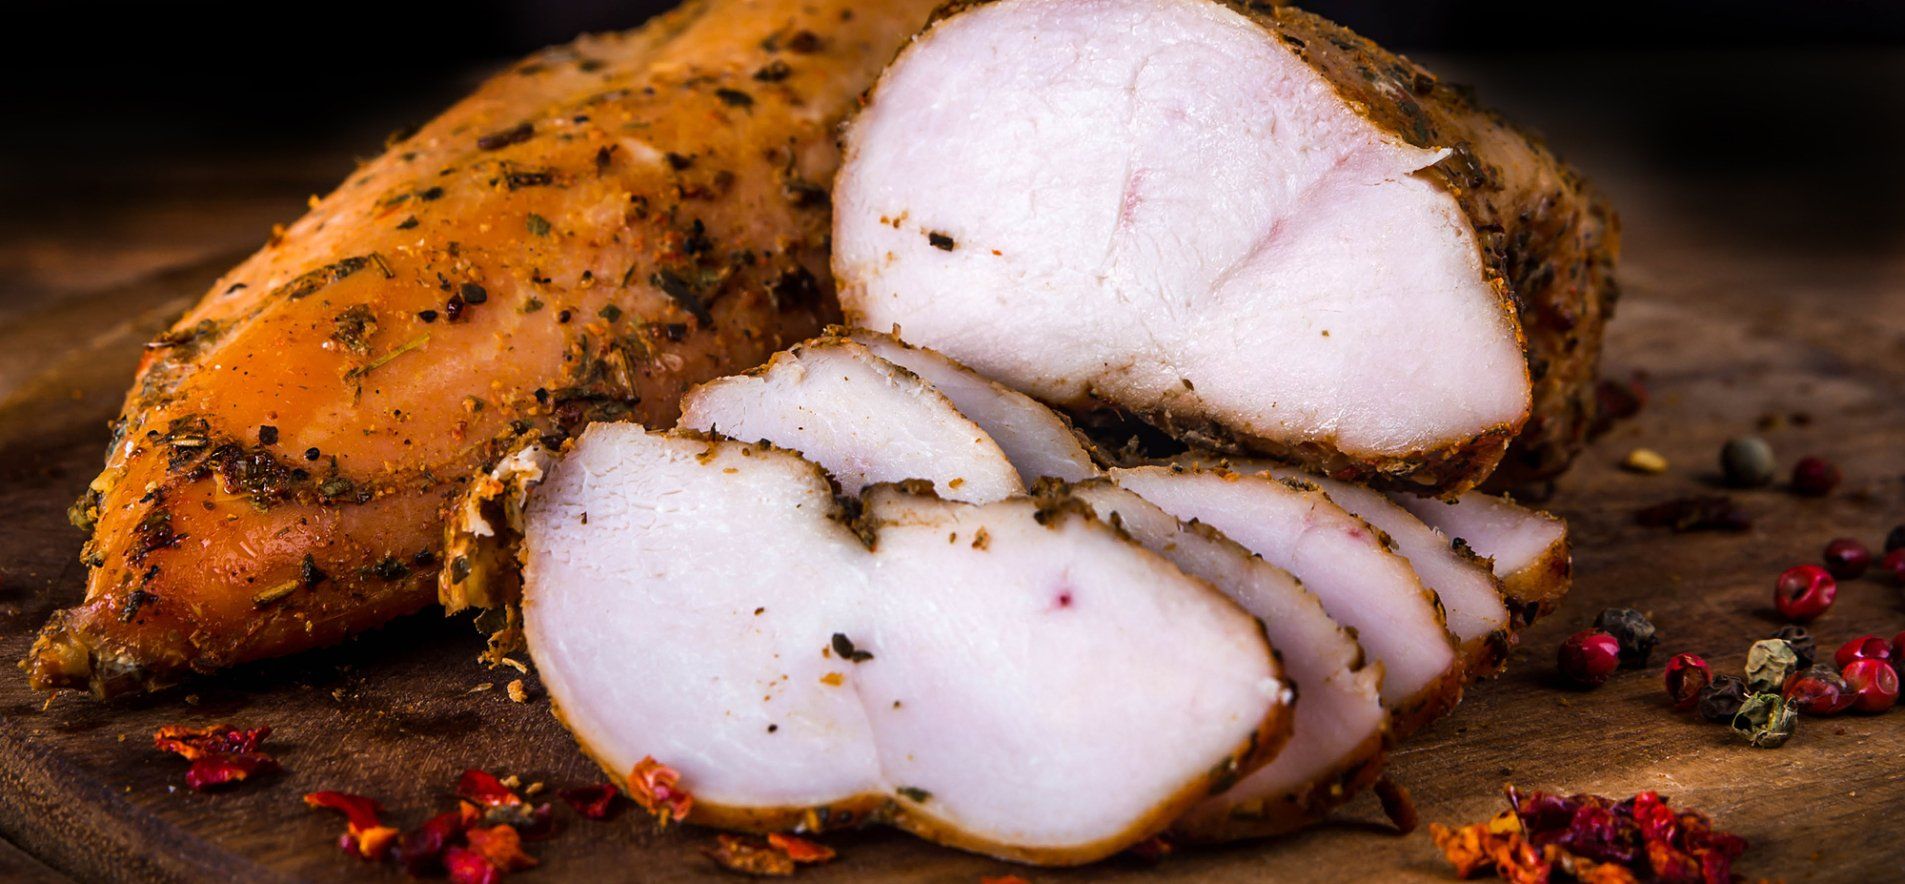 Как сделать копченое куриное филе дома - приготовьте в мультиварке - простой рецепт - Новости Вкусно